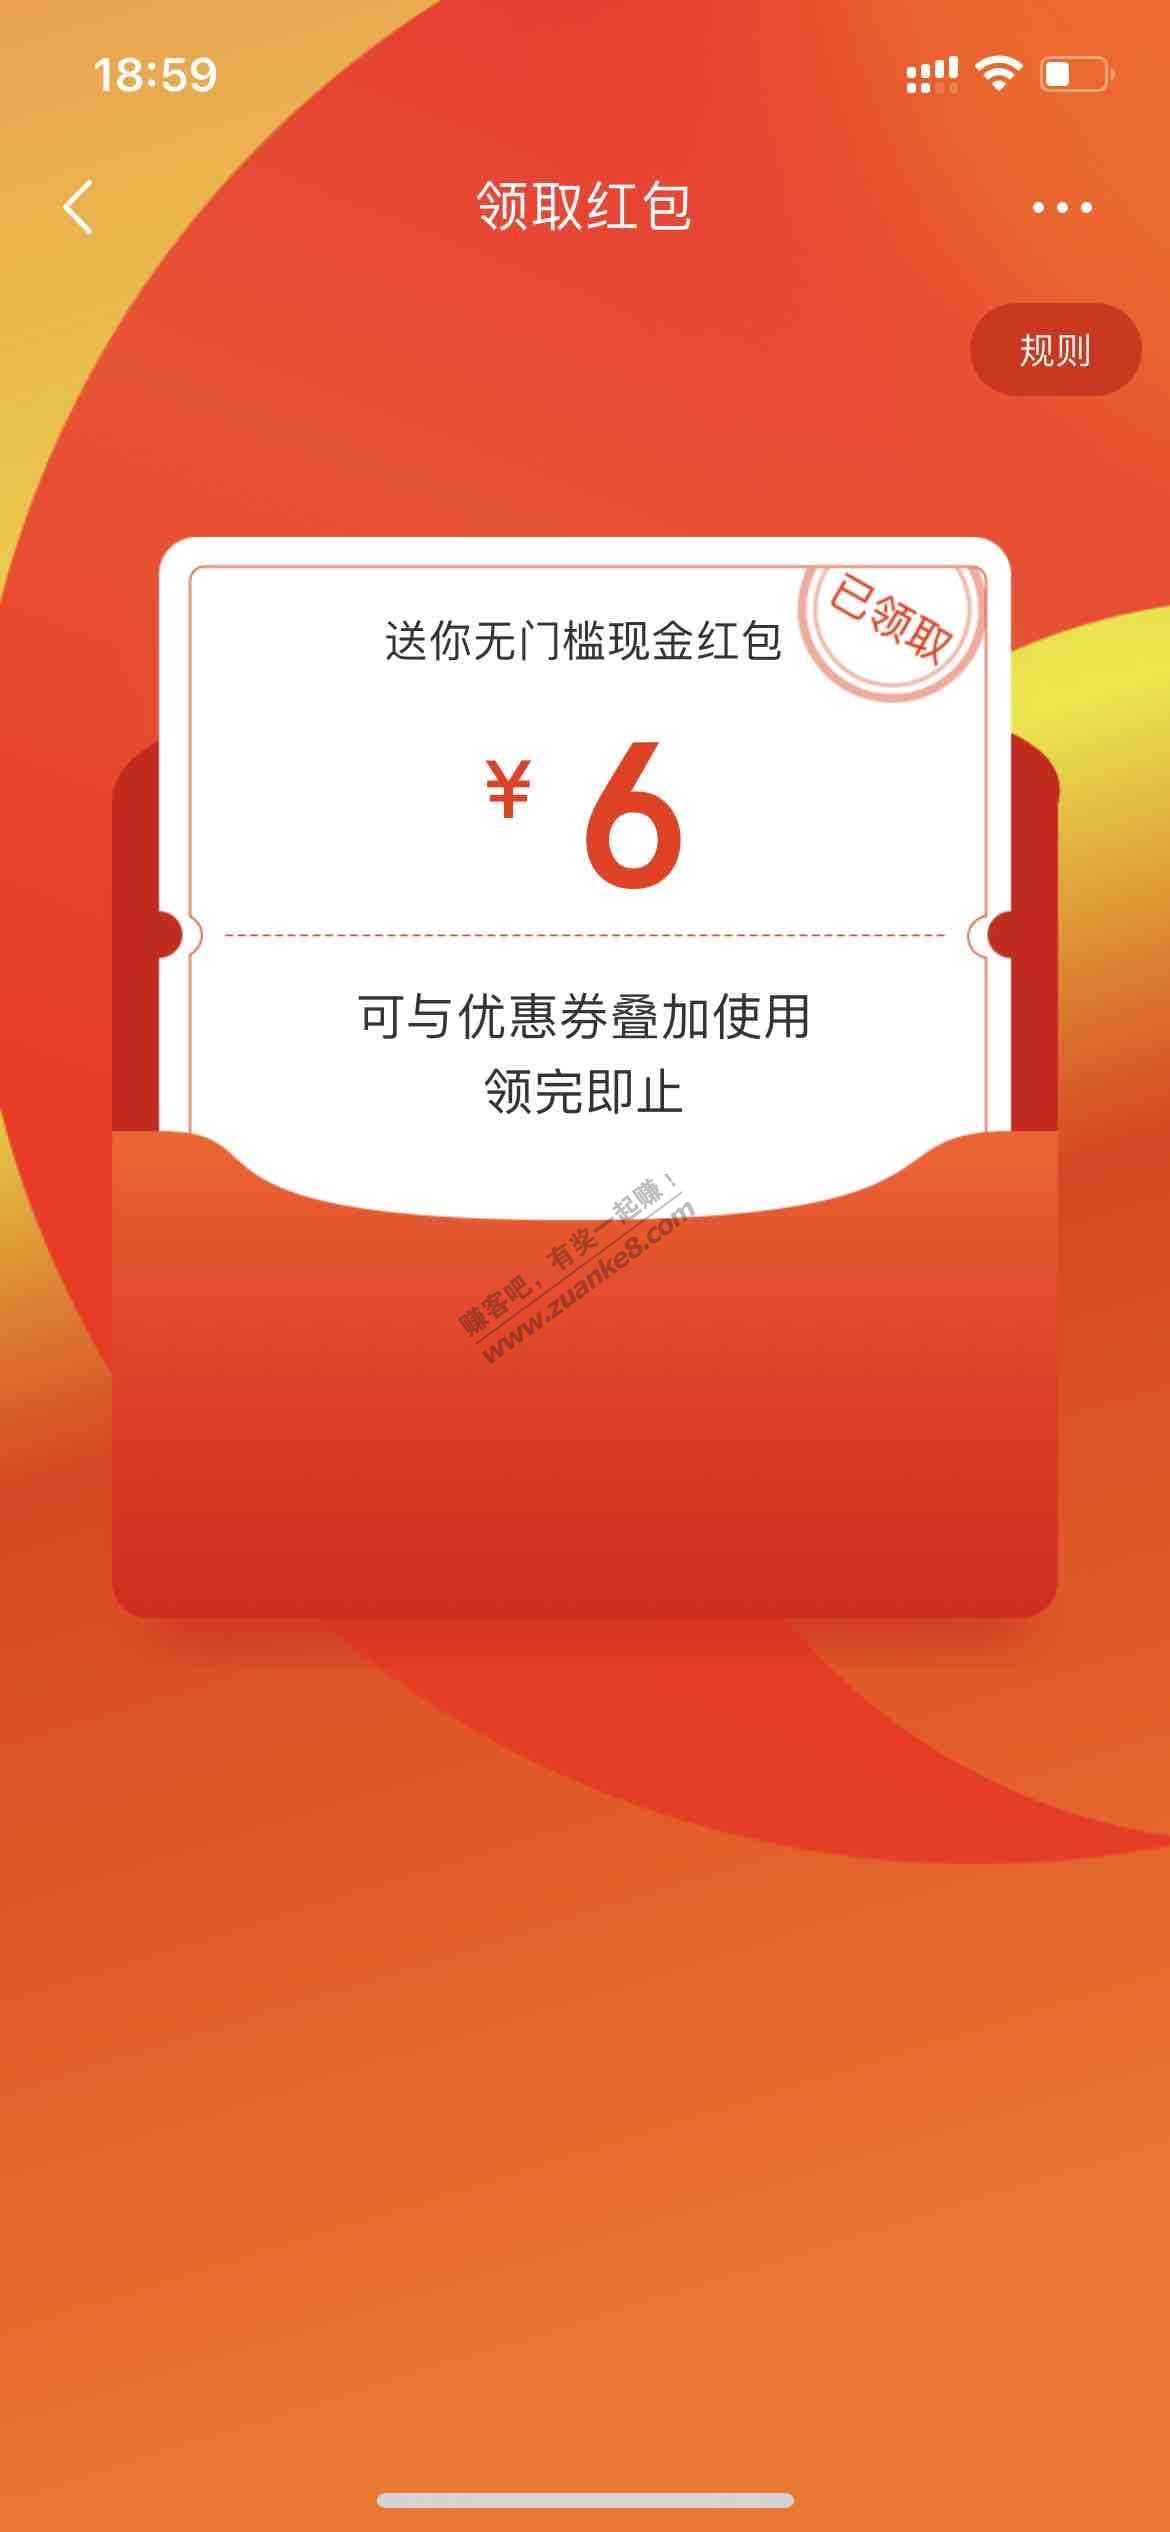 京东3或6红包-惠小助(52huixz.com)